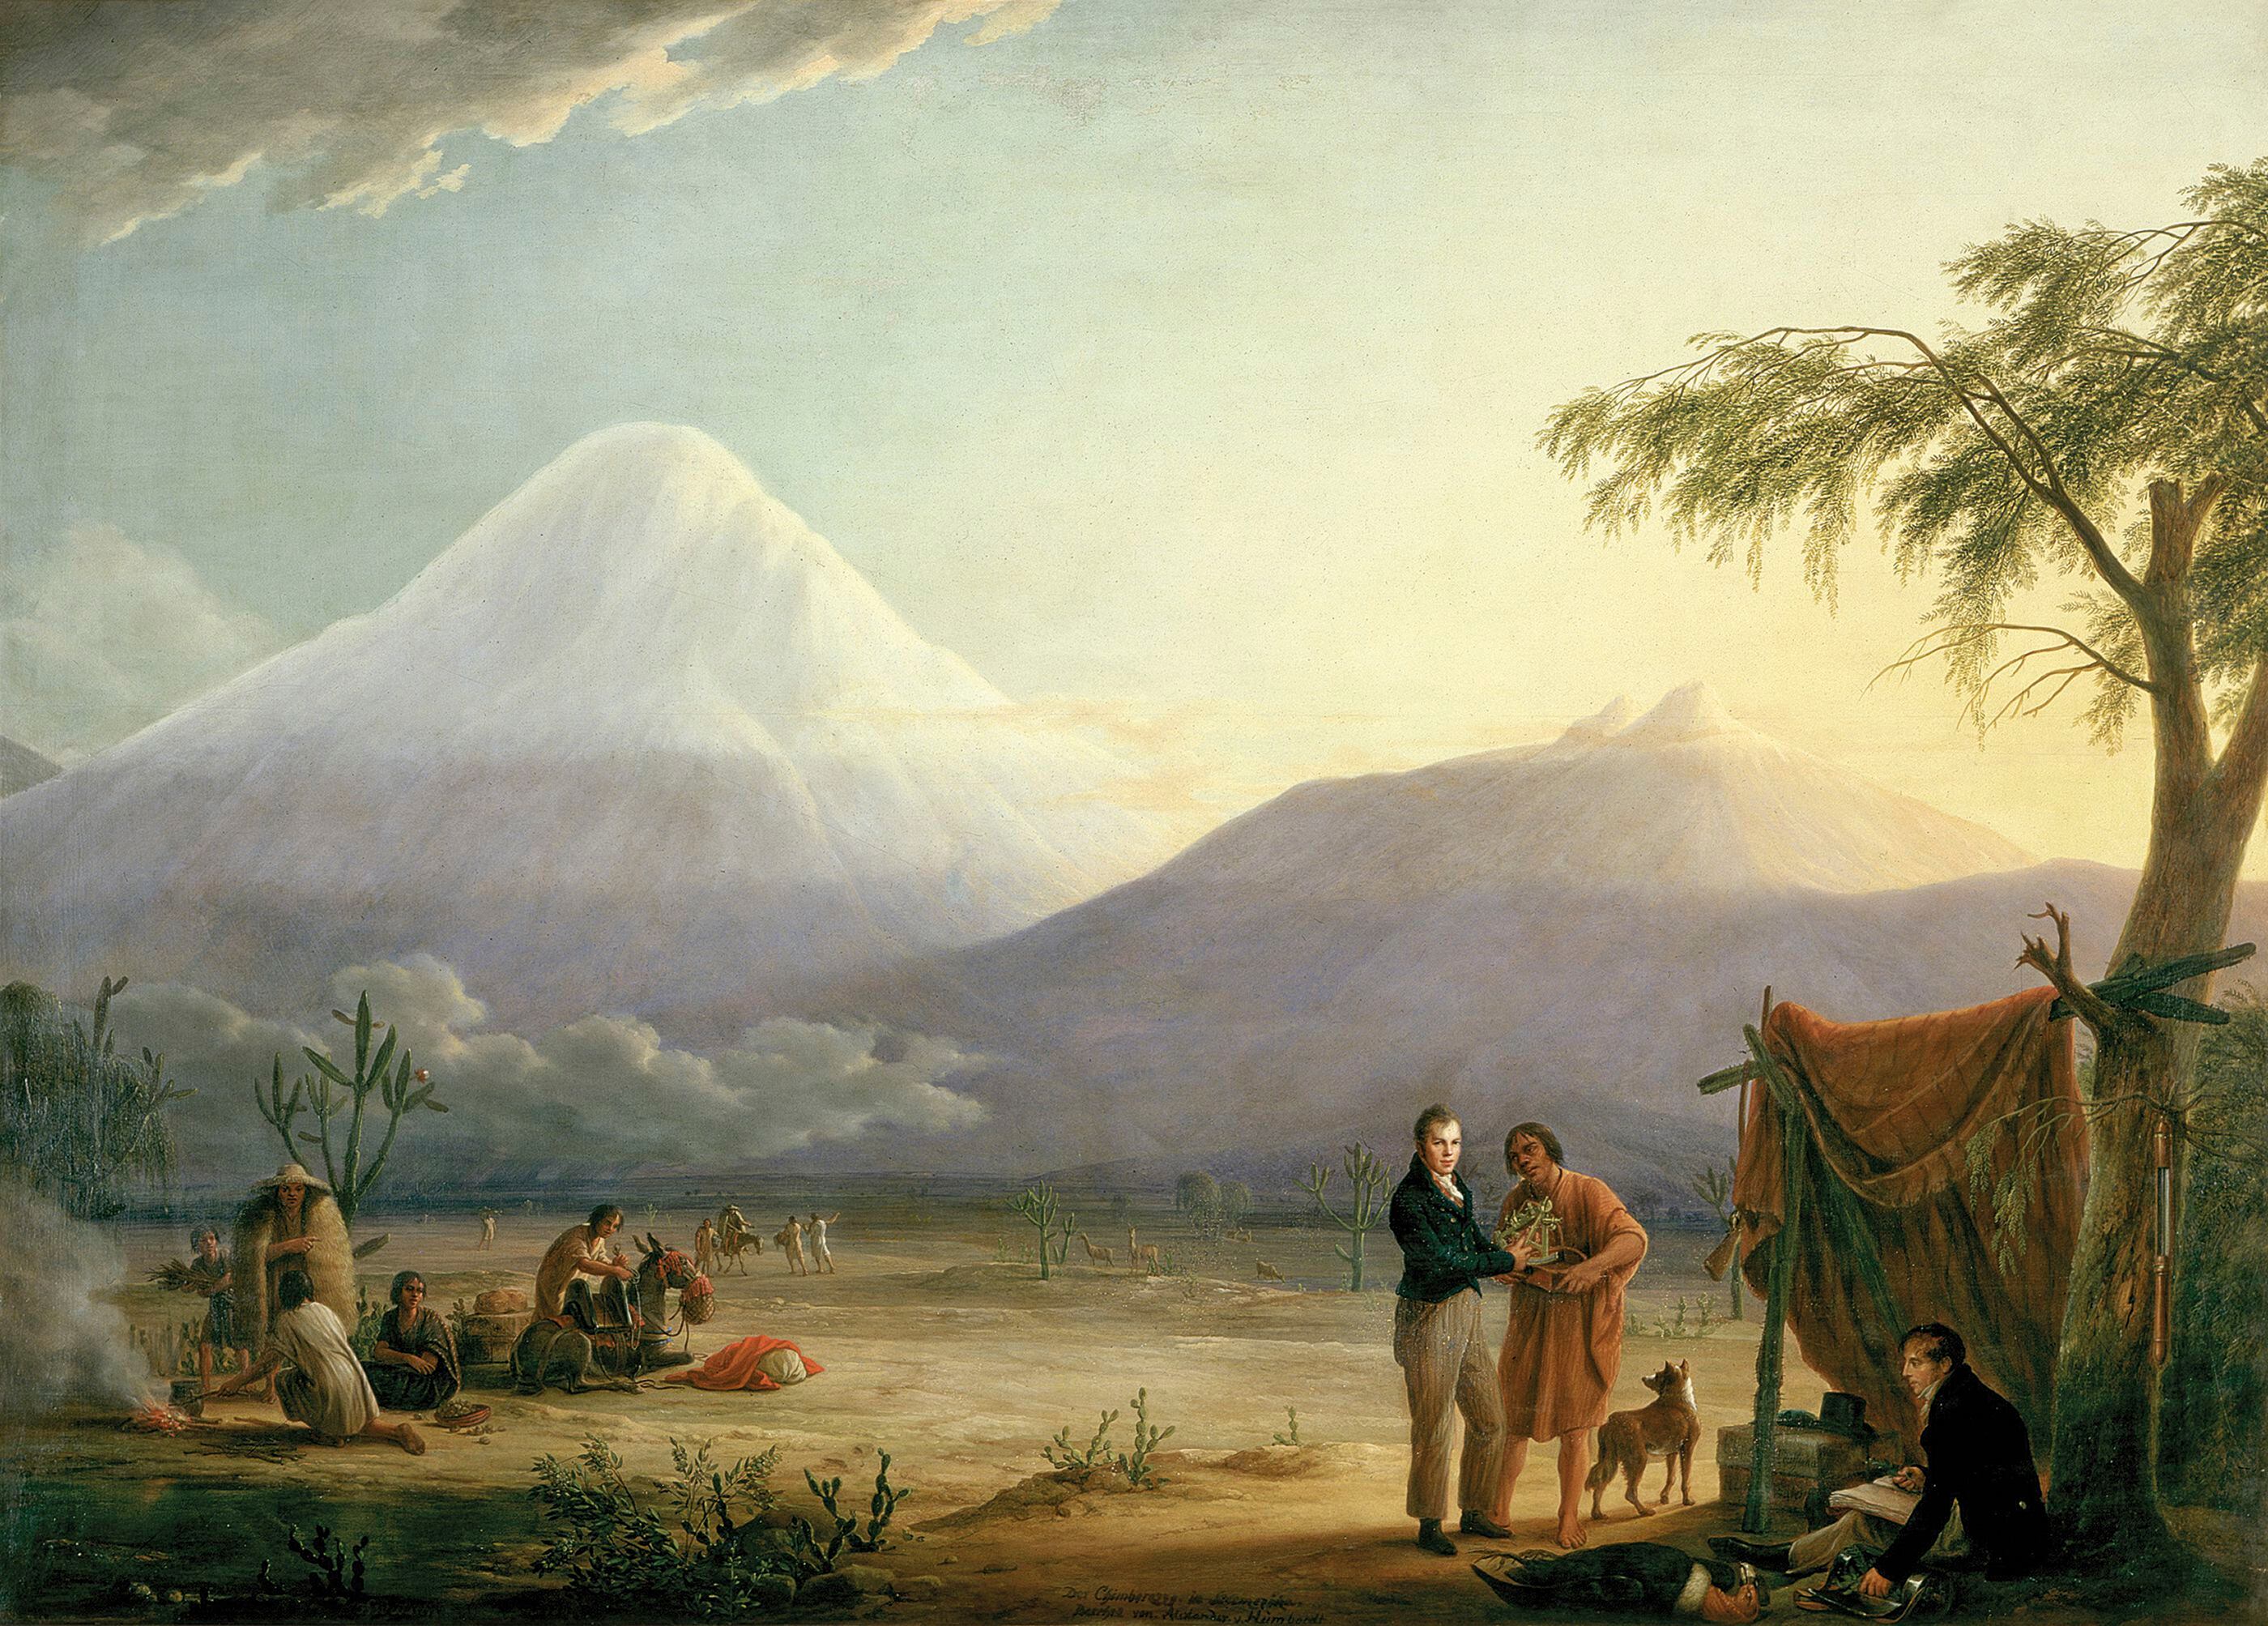 Alexander von Humboldt y Aimé Bonpland al pie del volcán del Chimborazo (Ecuador), cuadro de Friedrich Georg Weitsch (1810).